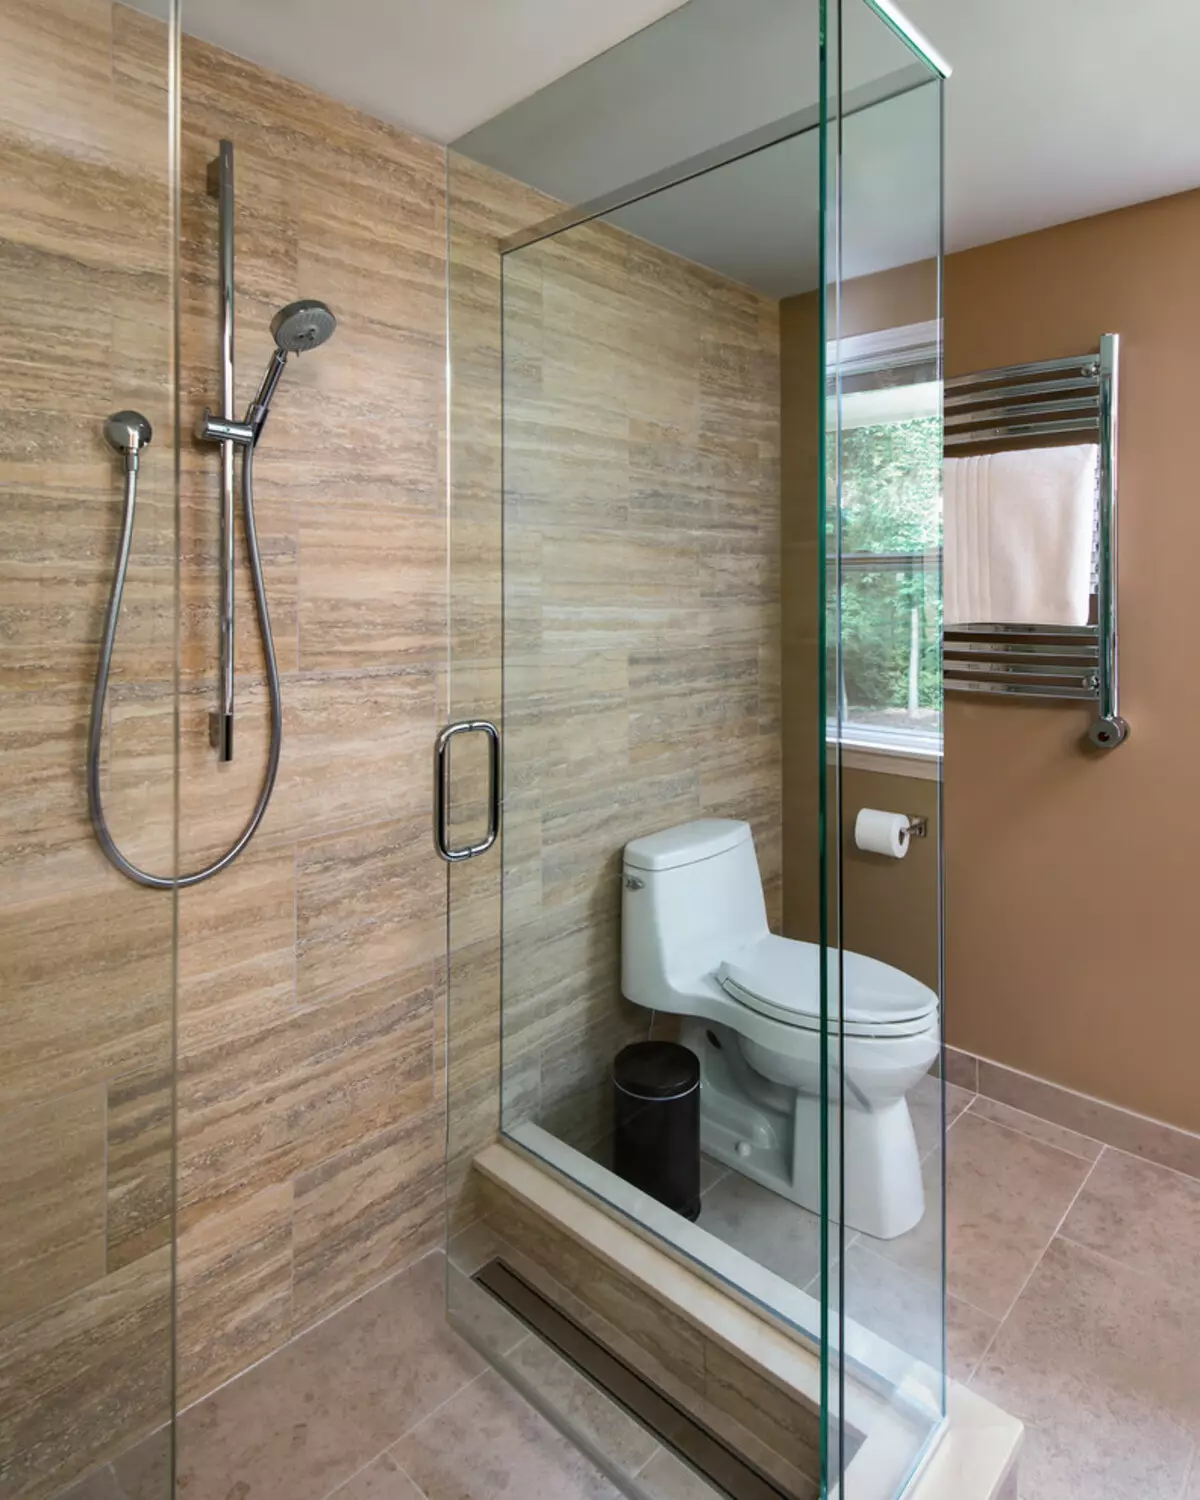 Ариун цэврийн өрөөнд шүршүүрт орох (86 зураг): Угаалгын өрөөний загвар: угаалгын өрөөний дизайны сонголтууд тавиур, плита, плита, төслүүд 21384_49